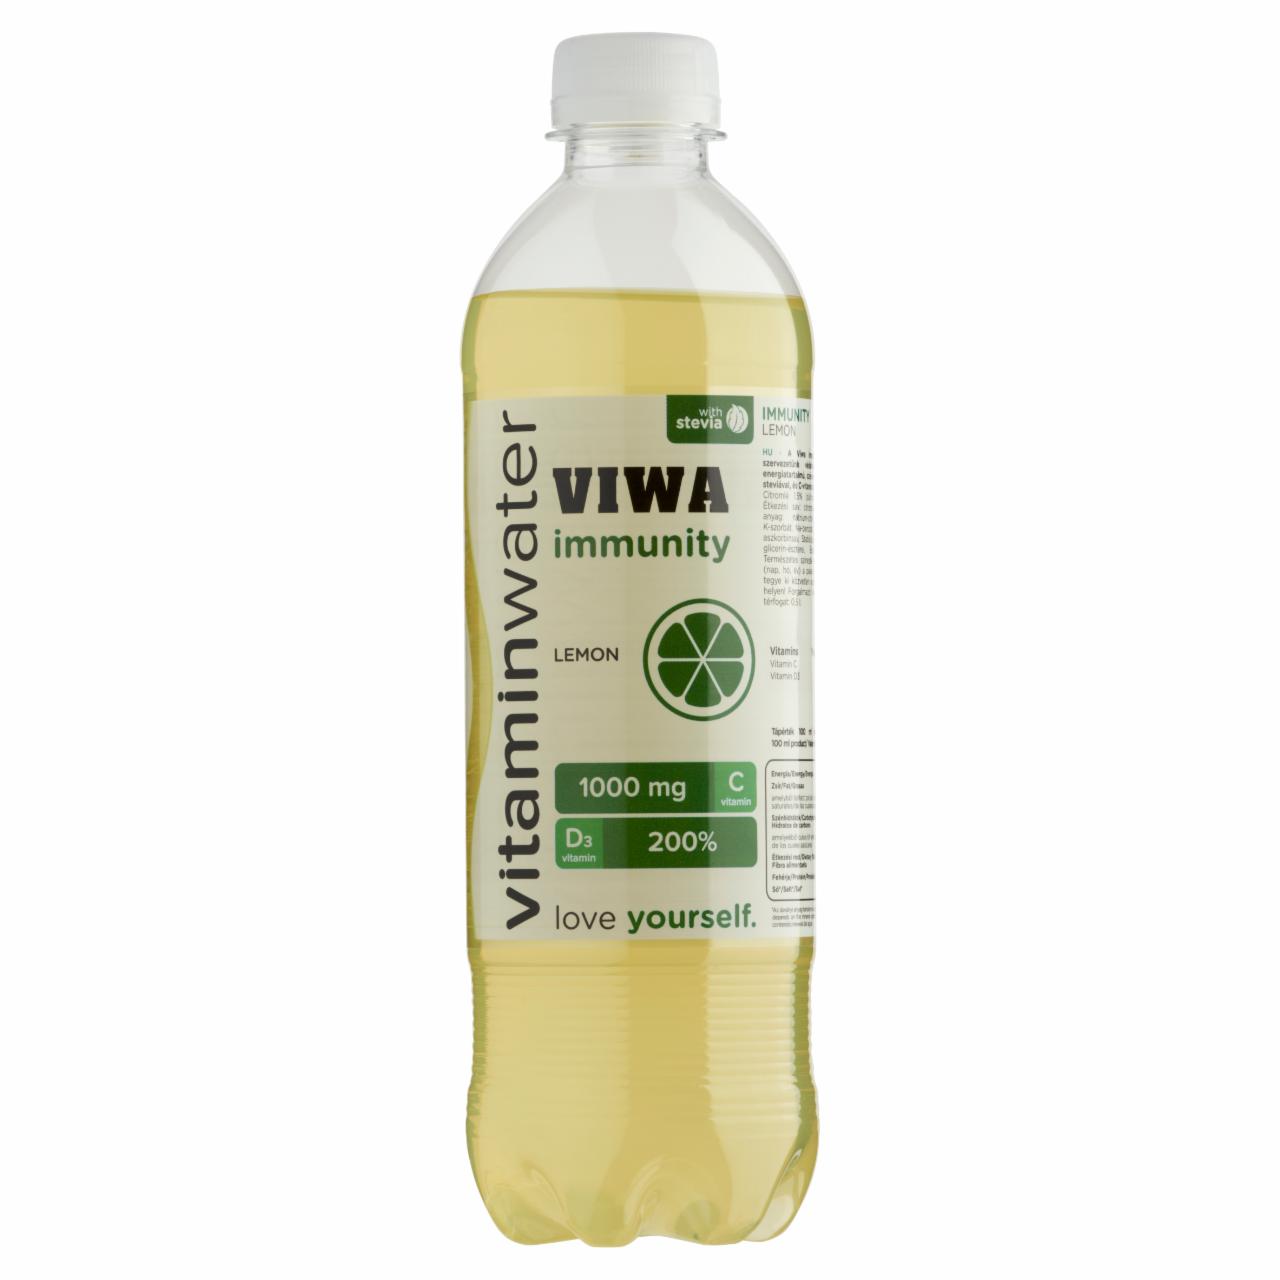 Képek - Viwa Vitaminwater Immunity citrom ízű, csökkentett energiatartalmú szénsavmentes üdítőital 600 ml